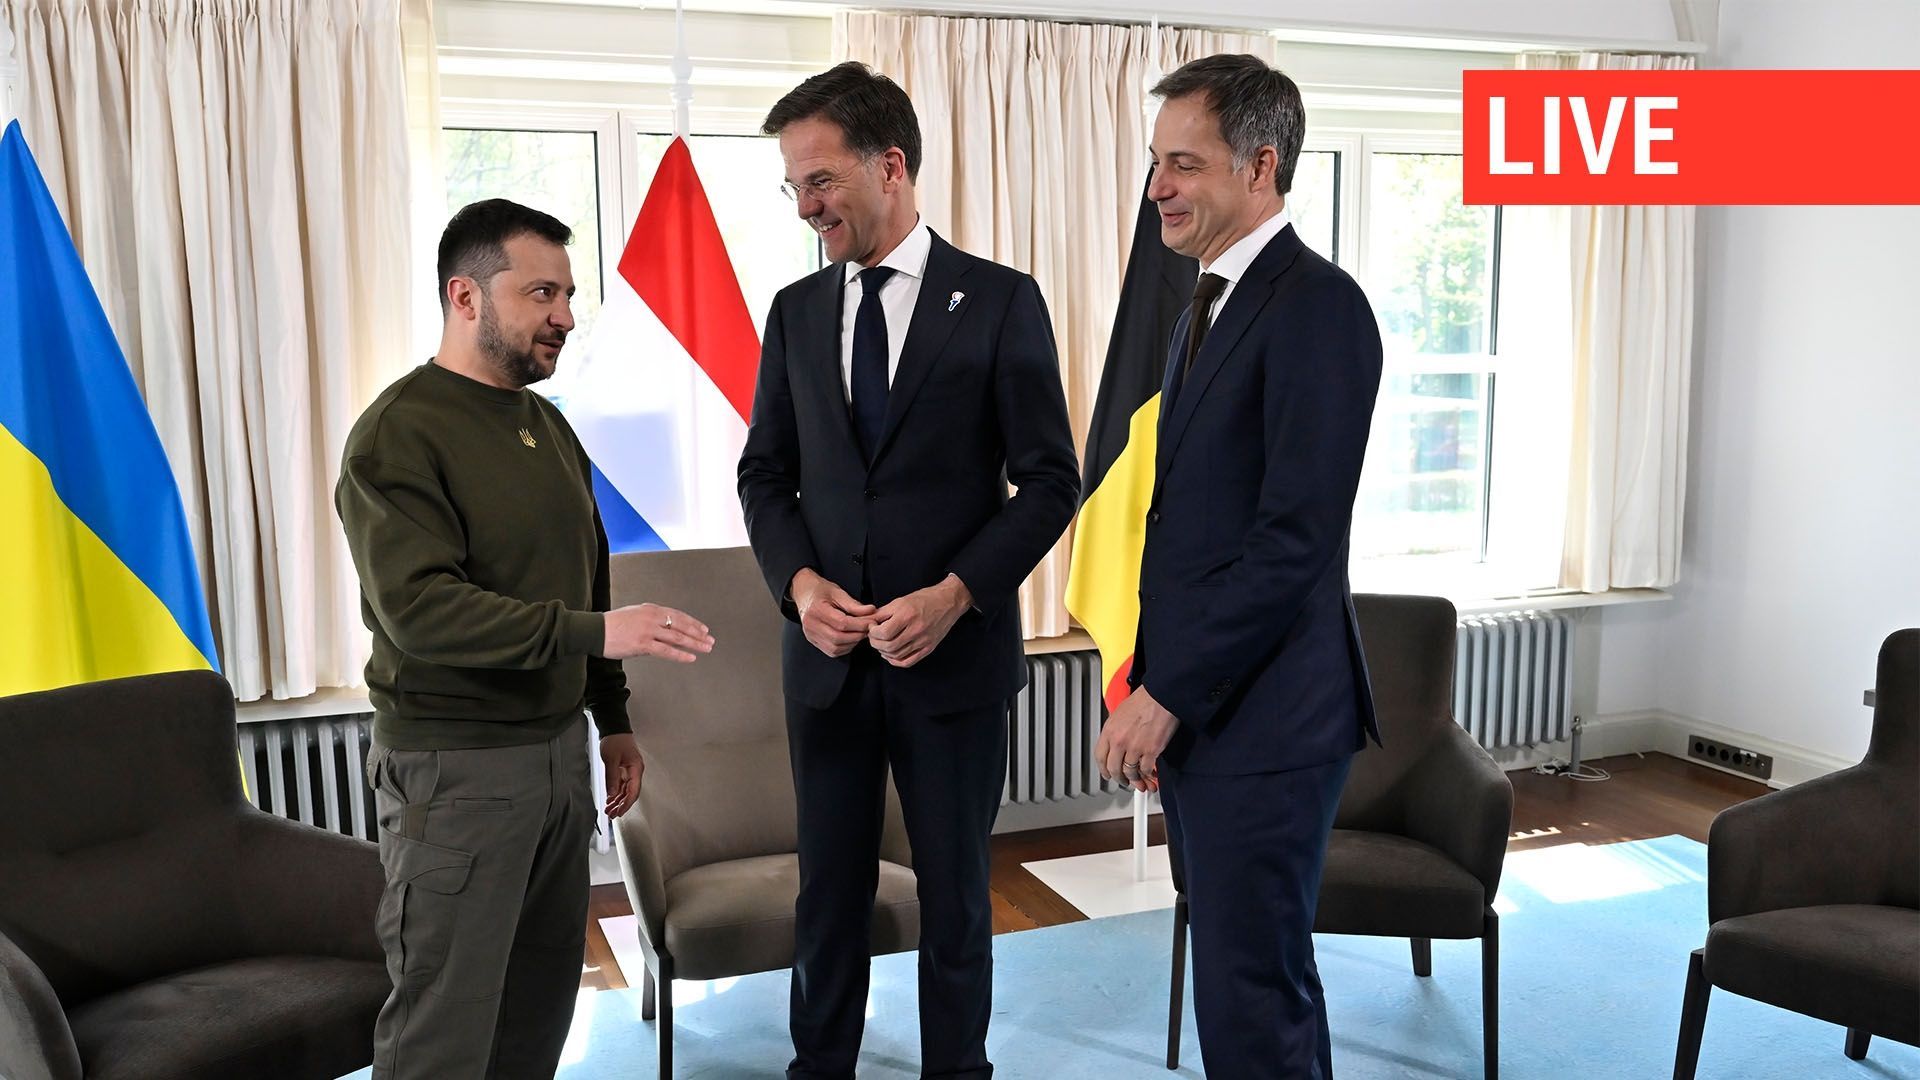 Le président ukrainien Volodymyr Zelensky, le Premier ministre néerlandais Mark Rutte et le Premier ministre Alexander De Croo posent pour le photographe lors d’une réunion sur la situation en Ukraine et le soutien de l’Europe à ce pays, à La Haye, aux Pa